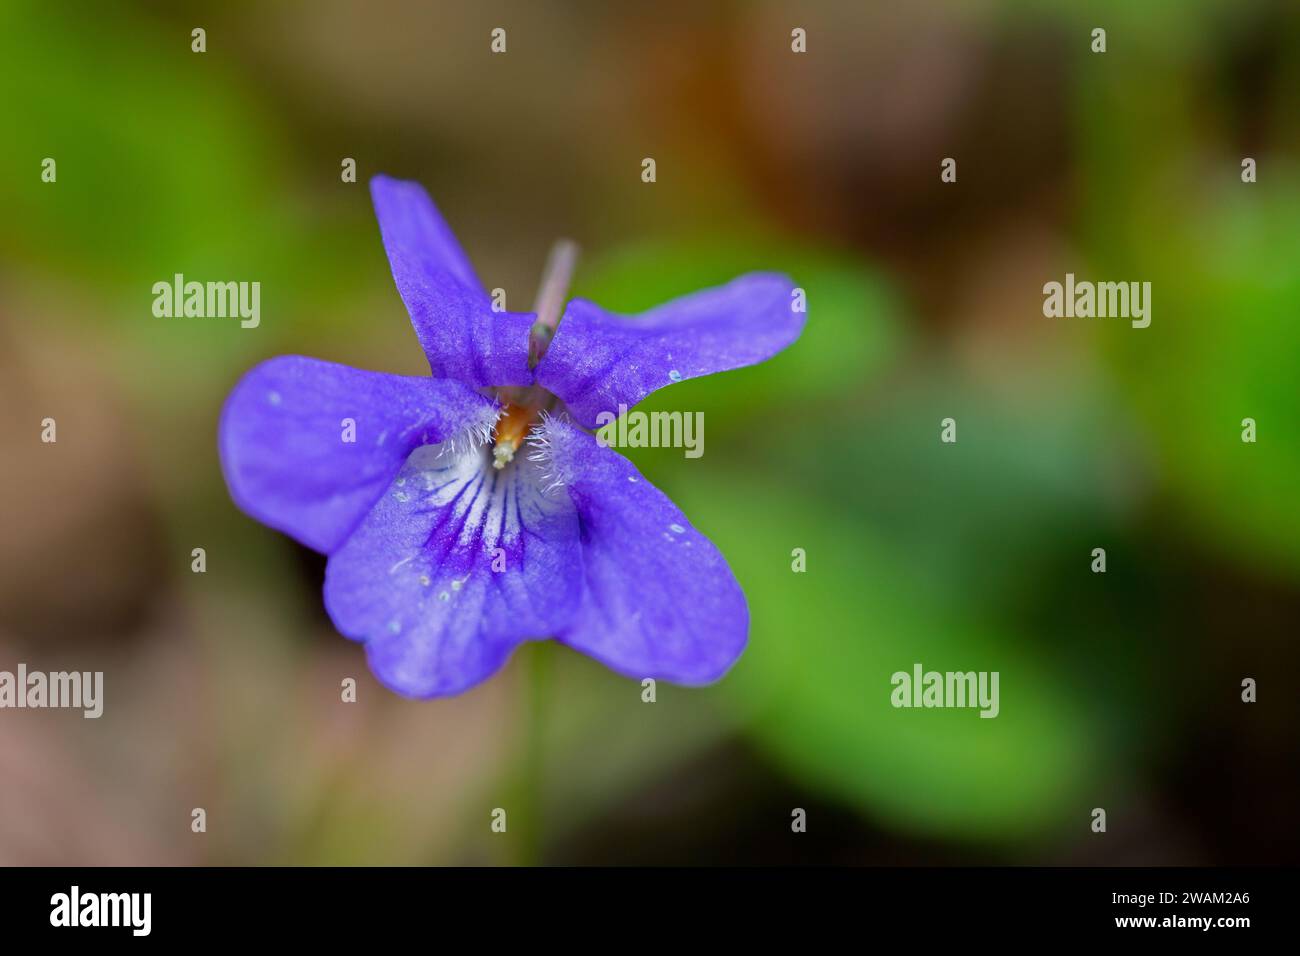 Début de chien-violet / violet en bois clair (Viola reichenbachiana / Viola sylvestris) en fleurs au printemps Banque D'Images